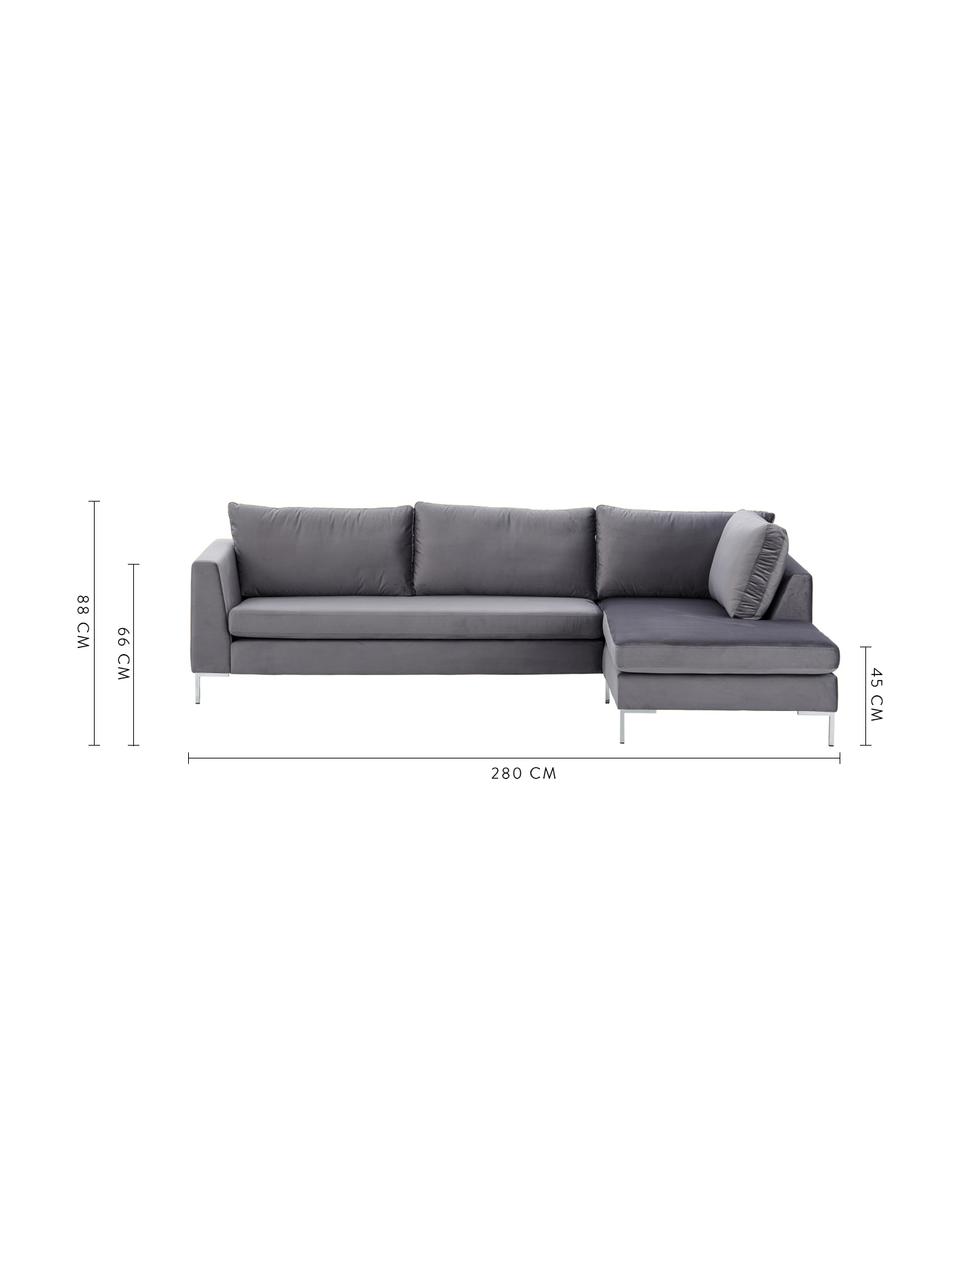 Sofa narożna z aksamitu Luna, Tapicerka: aksamit (100% poliester) , Stelaż: lite drewno bukowe, Nogi: metal galwanizowany, Ciemny szary, S 280 x G 184 cm